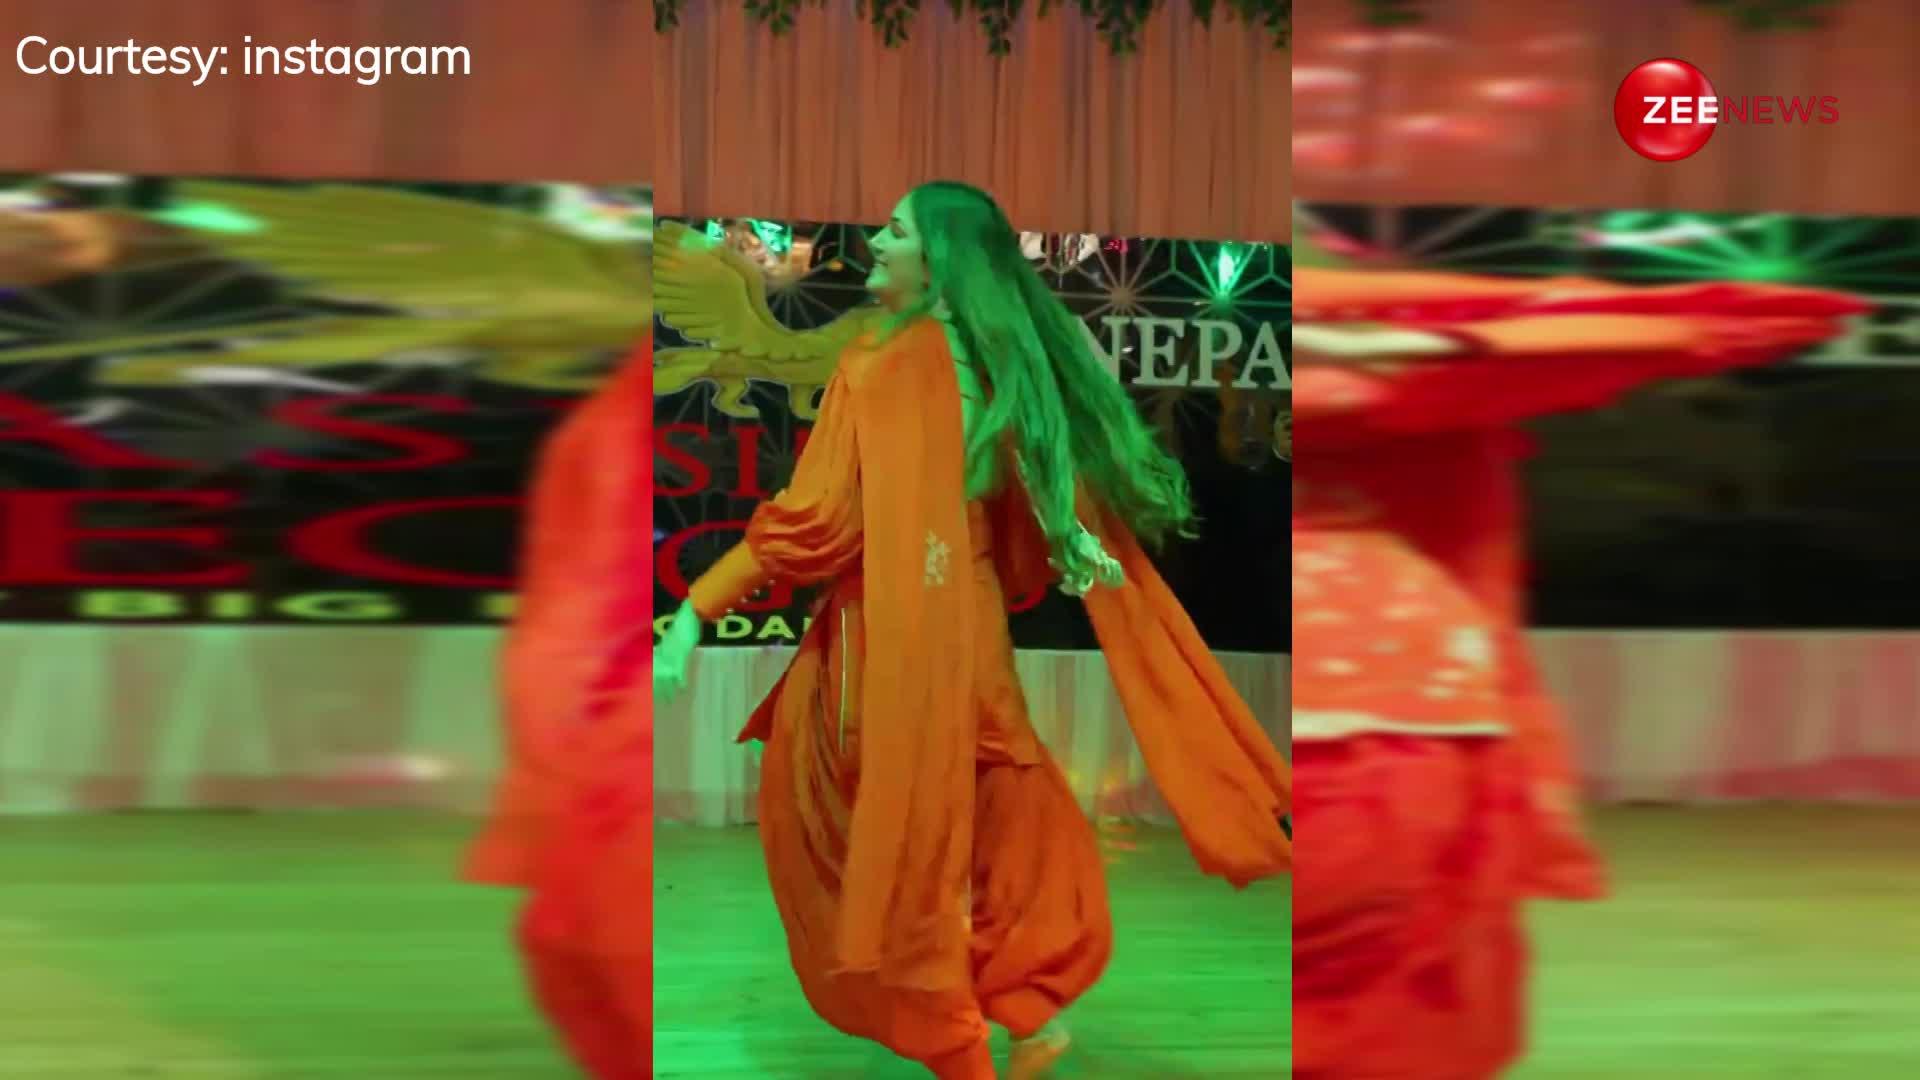 चटक संतरे कलर का टाइट सूट पहन Sapna Chaudhary ने स्टेज पर किया रॉकिंग डांस, देख हैरान रह गया पूरा हरियाणा